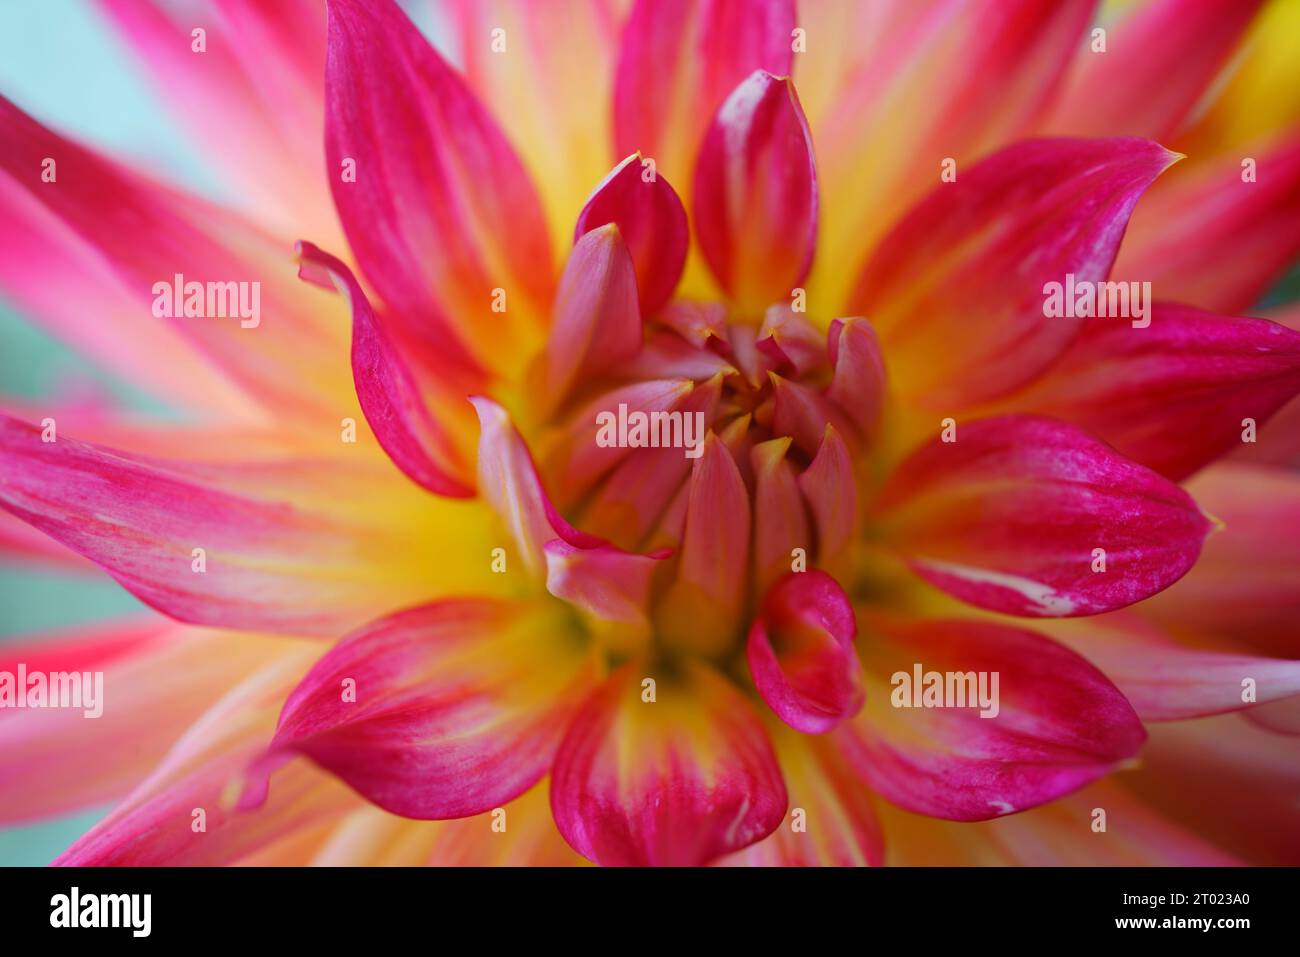 A macro close up of a Dahlia flower. Stock Photo